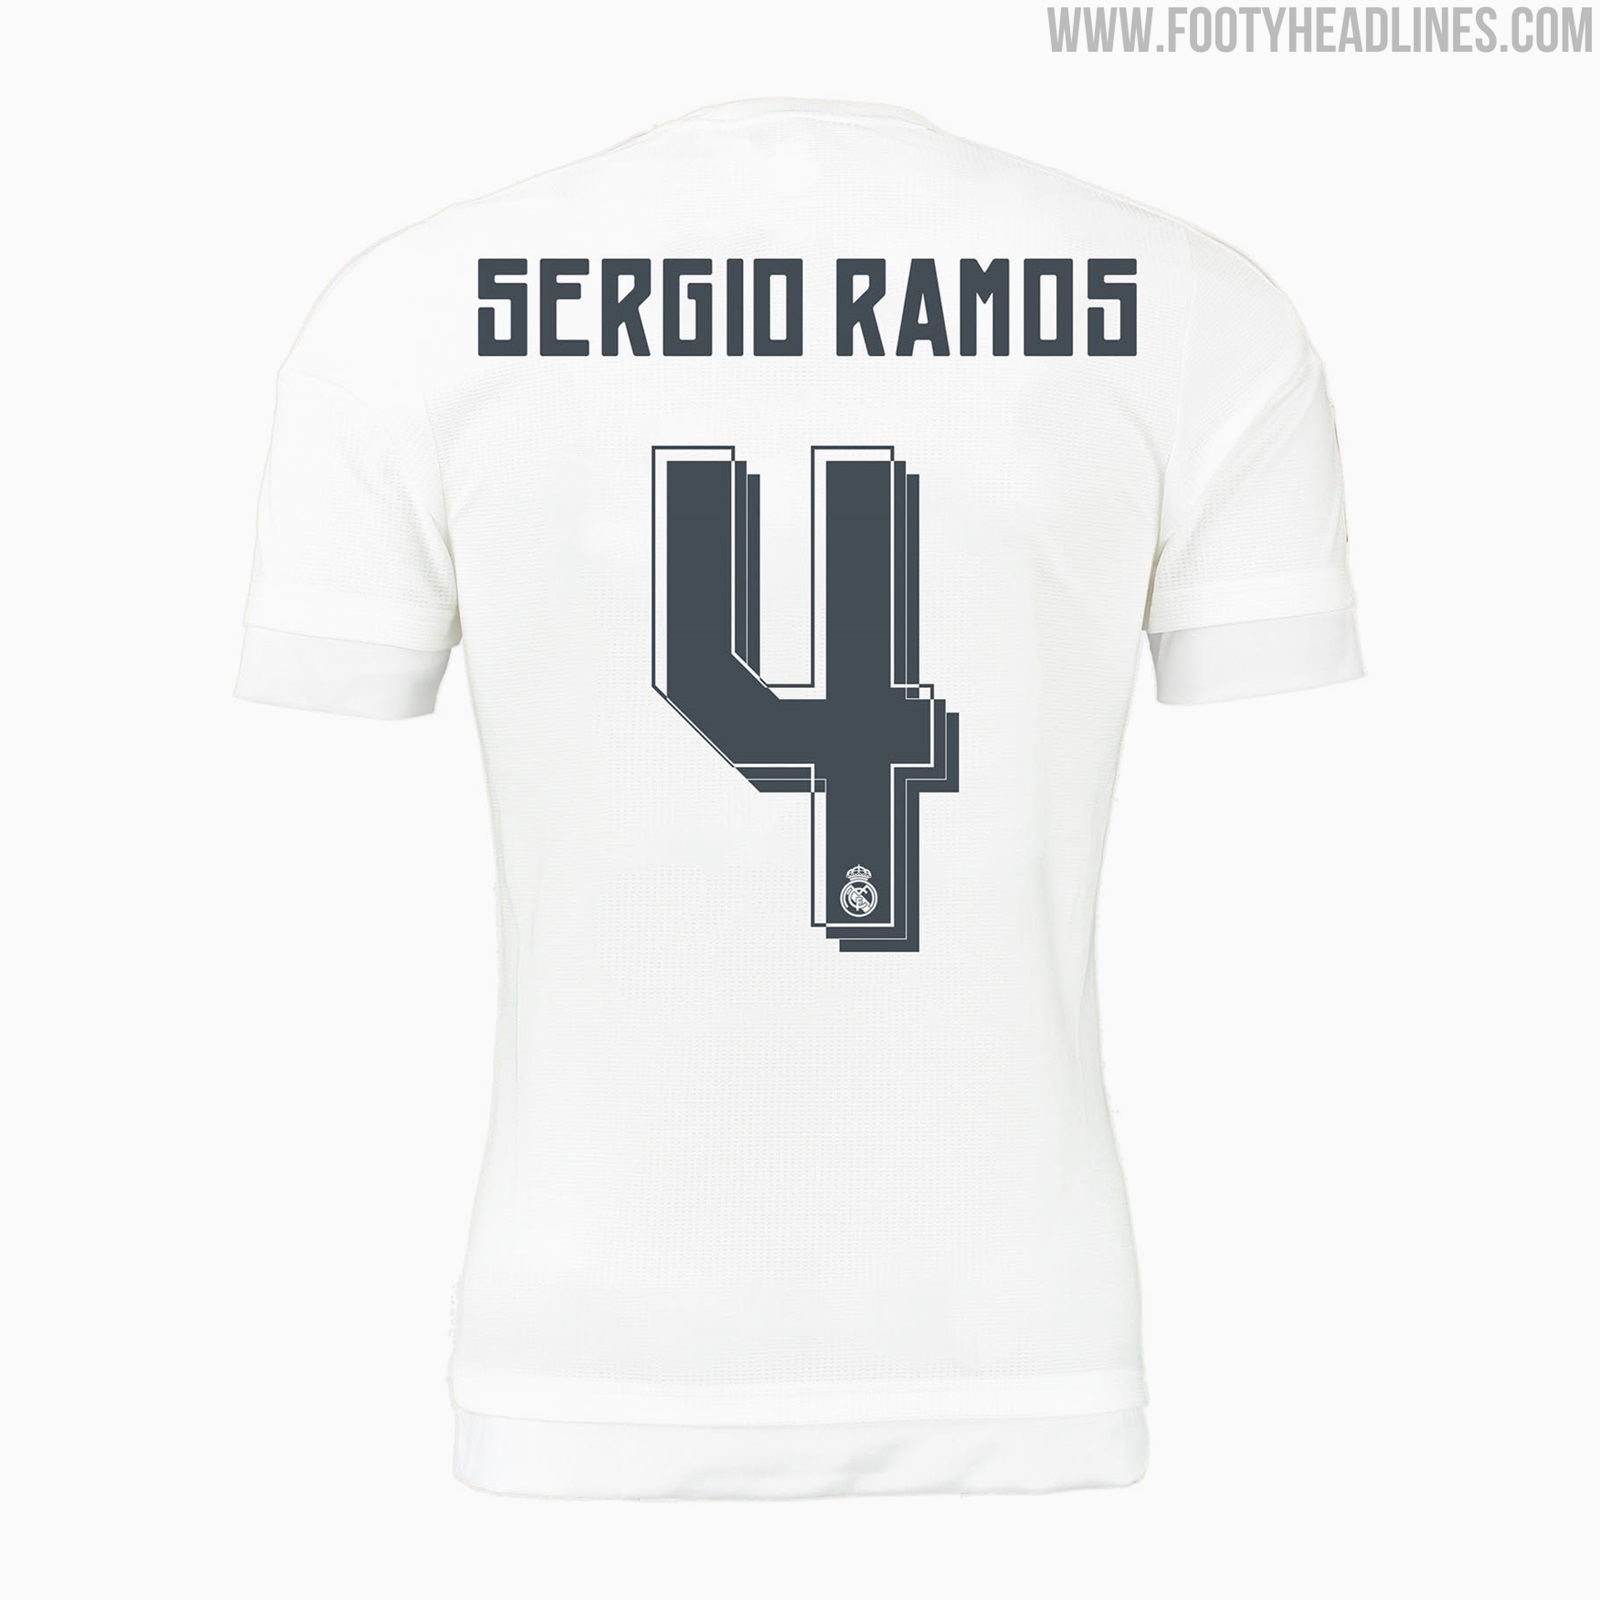 Включай цифру номер 4. Футболка Серхио Рамос. Футболка Реал Мадрид 15/16. Футболка Реал Мадрид Серхио Рамос. Майка Реал Мадрид 15 16.